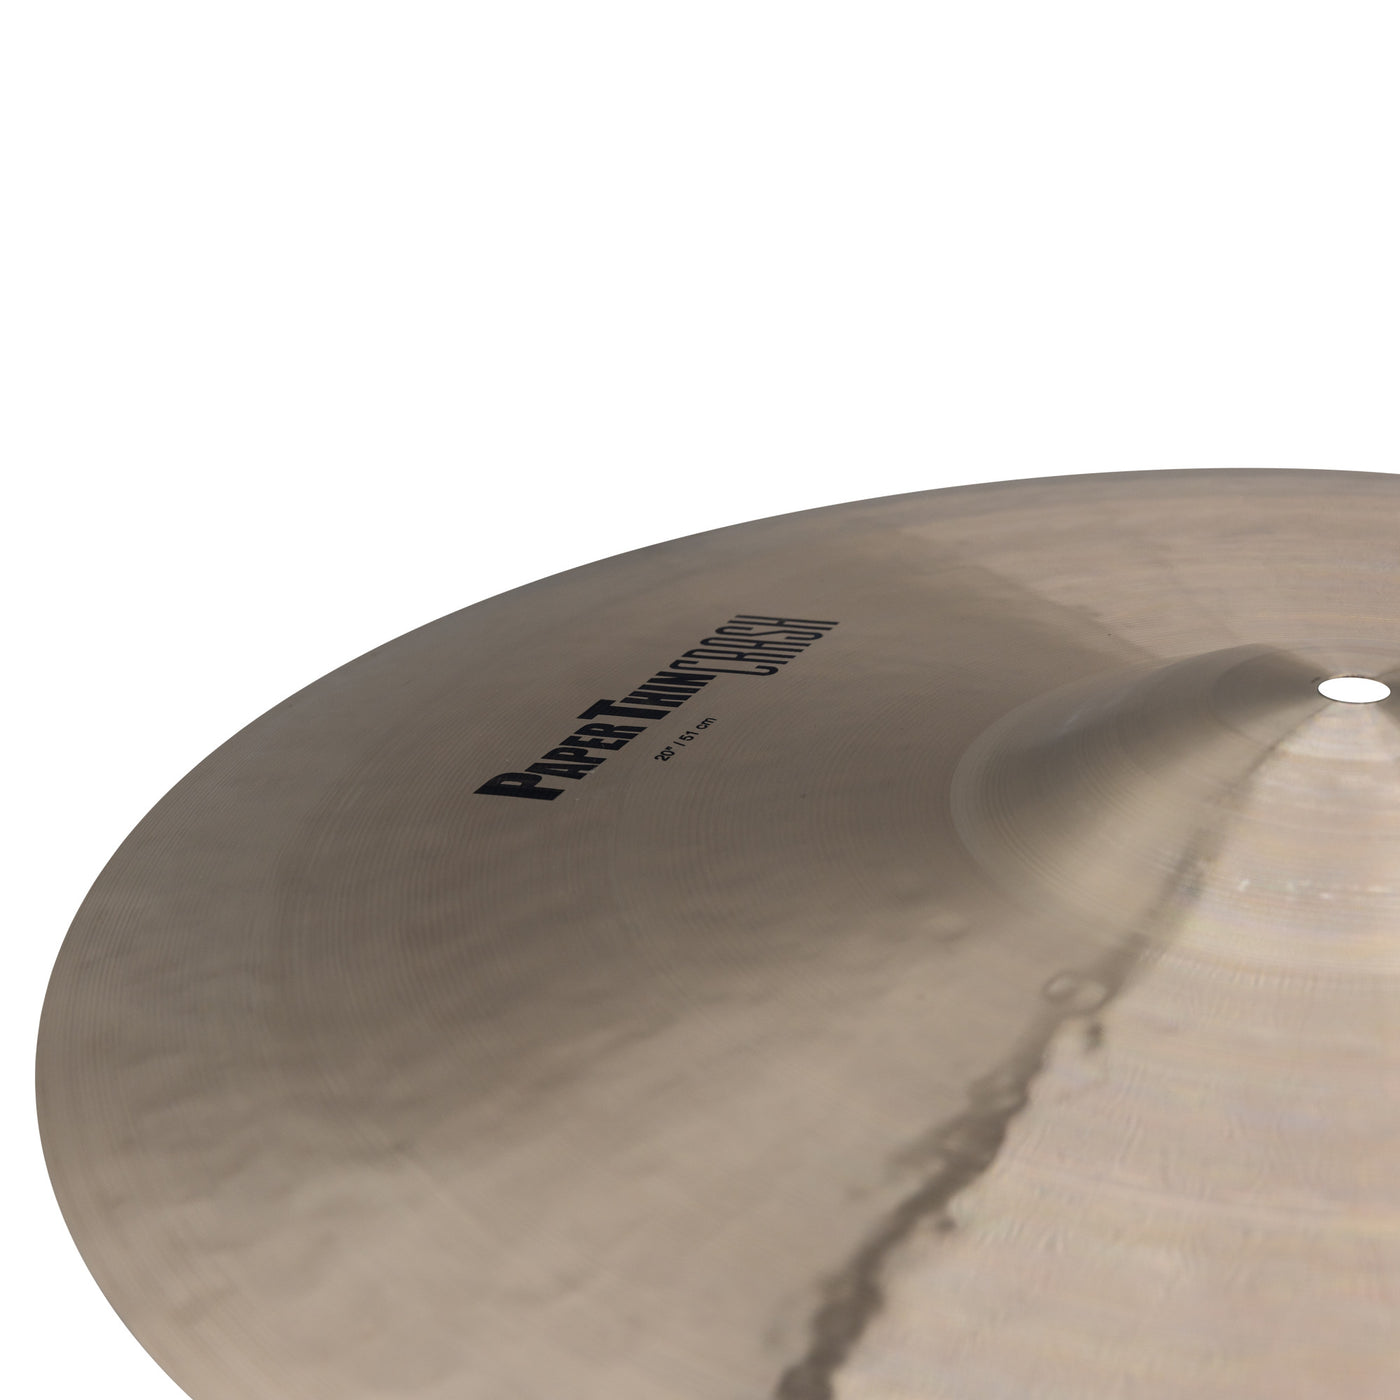 Zildjian K2820 K Paper Thin Crash Cymbal for Drum Set, 20"